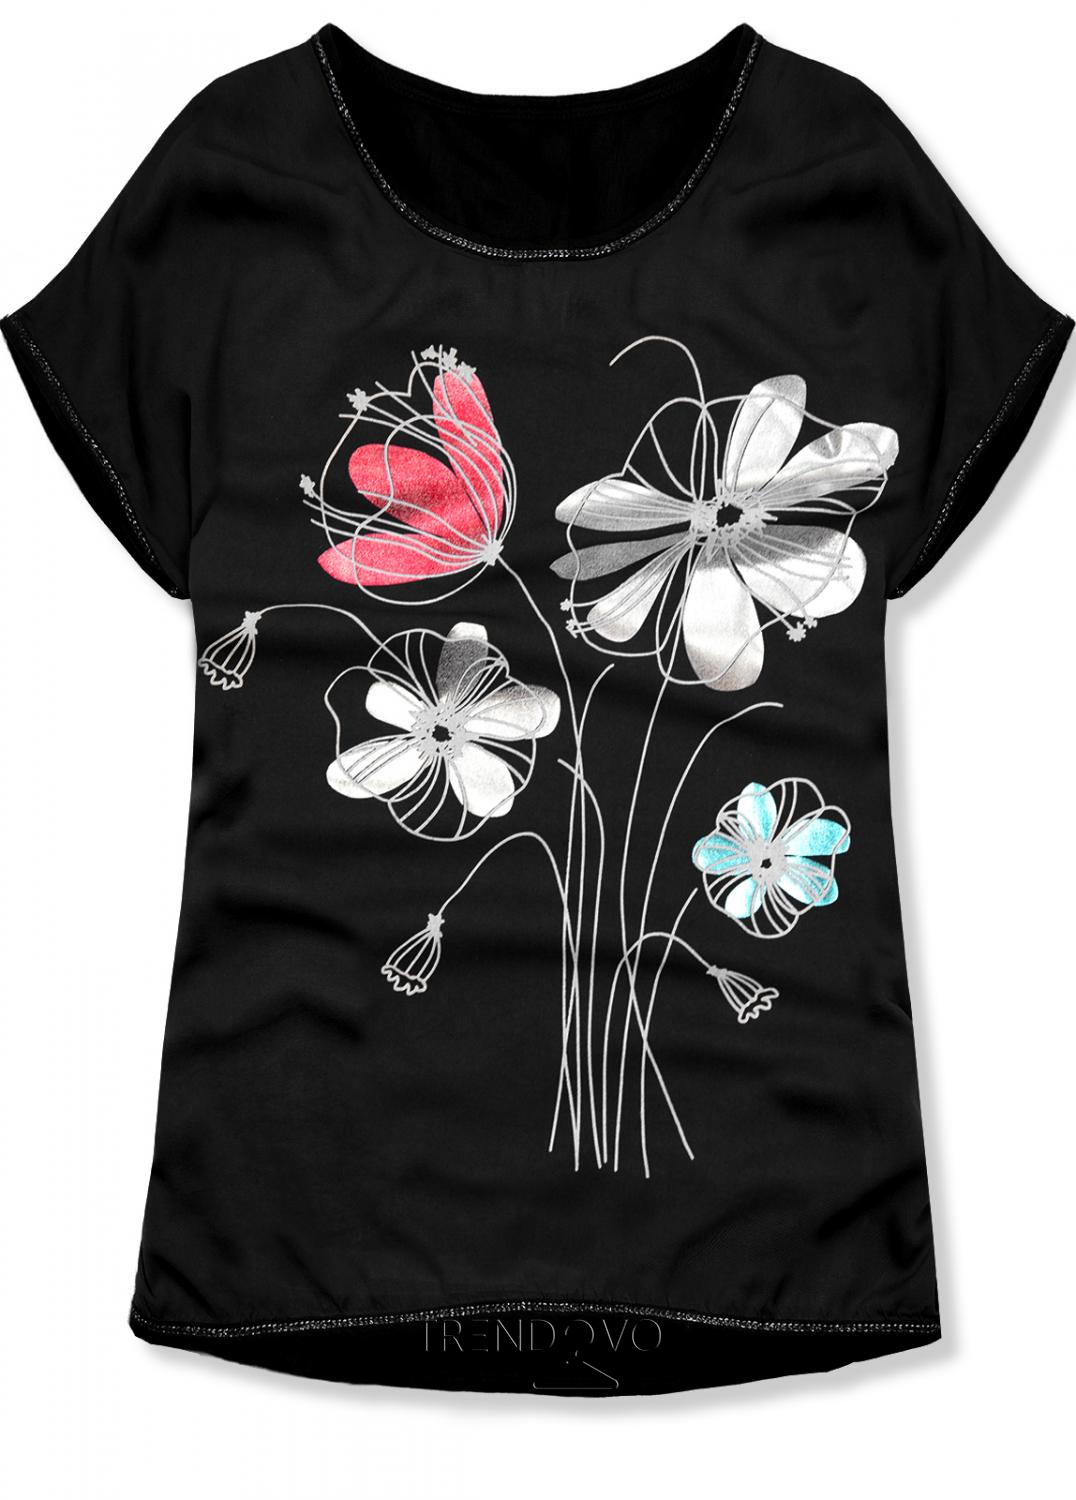 Čierne tričko s potlačou kvetov